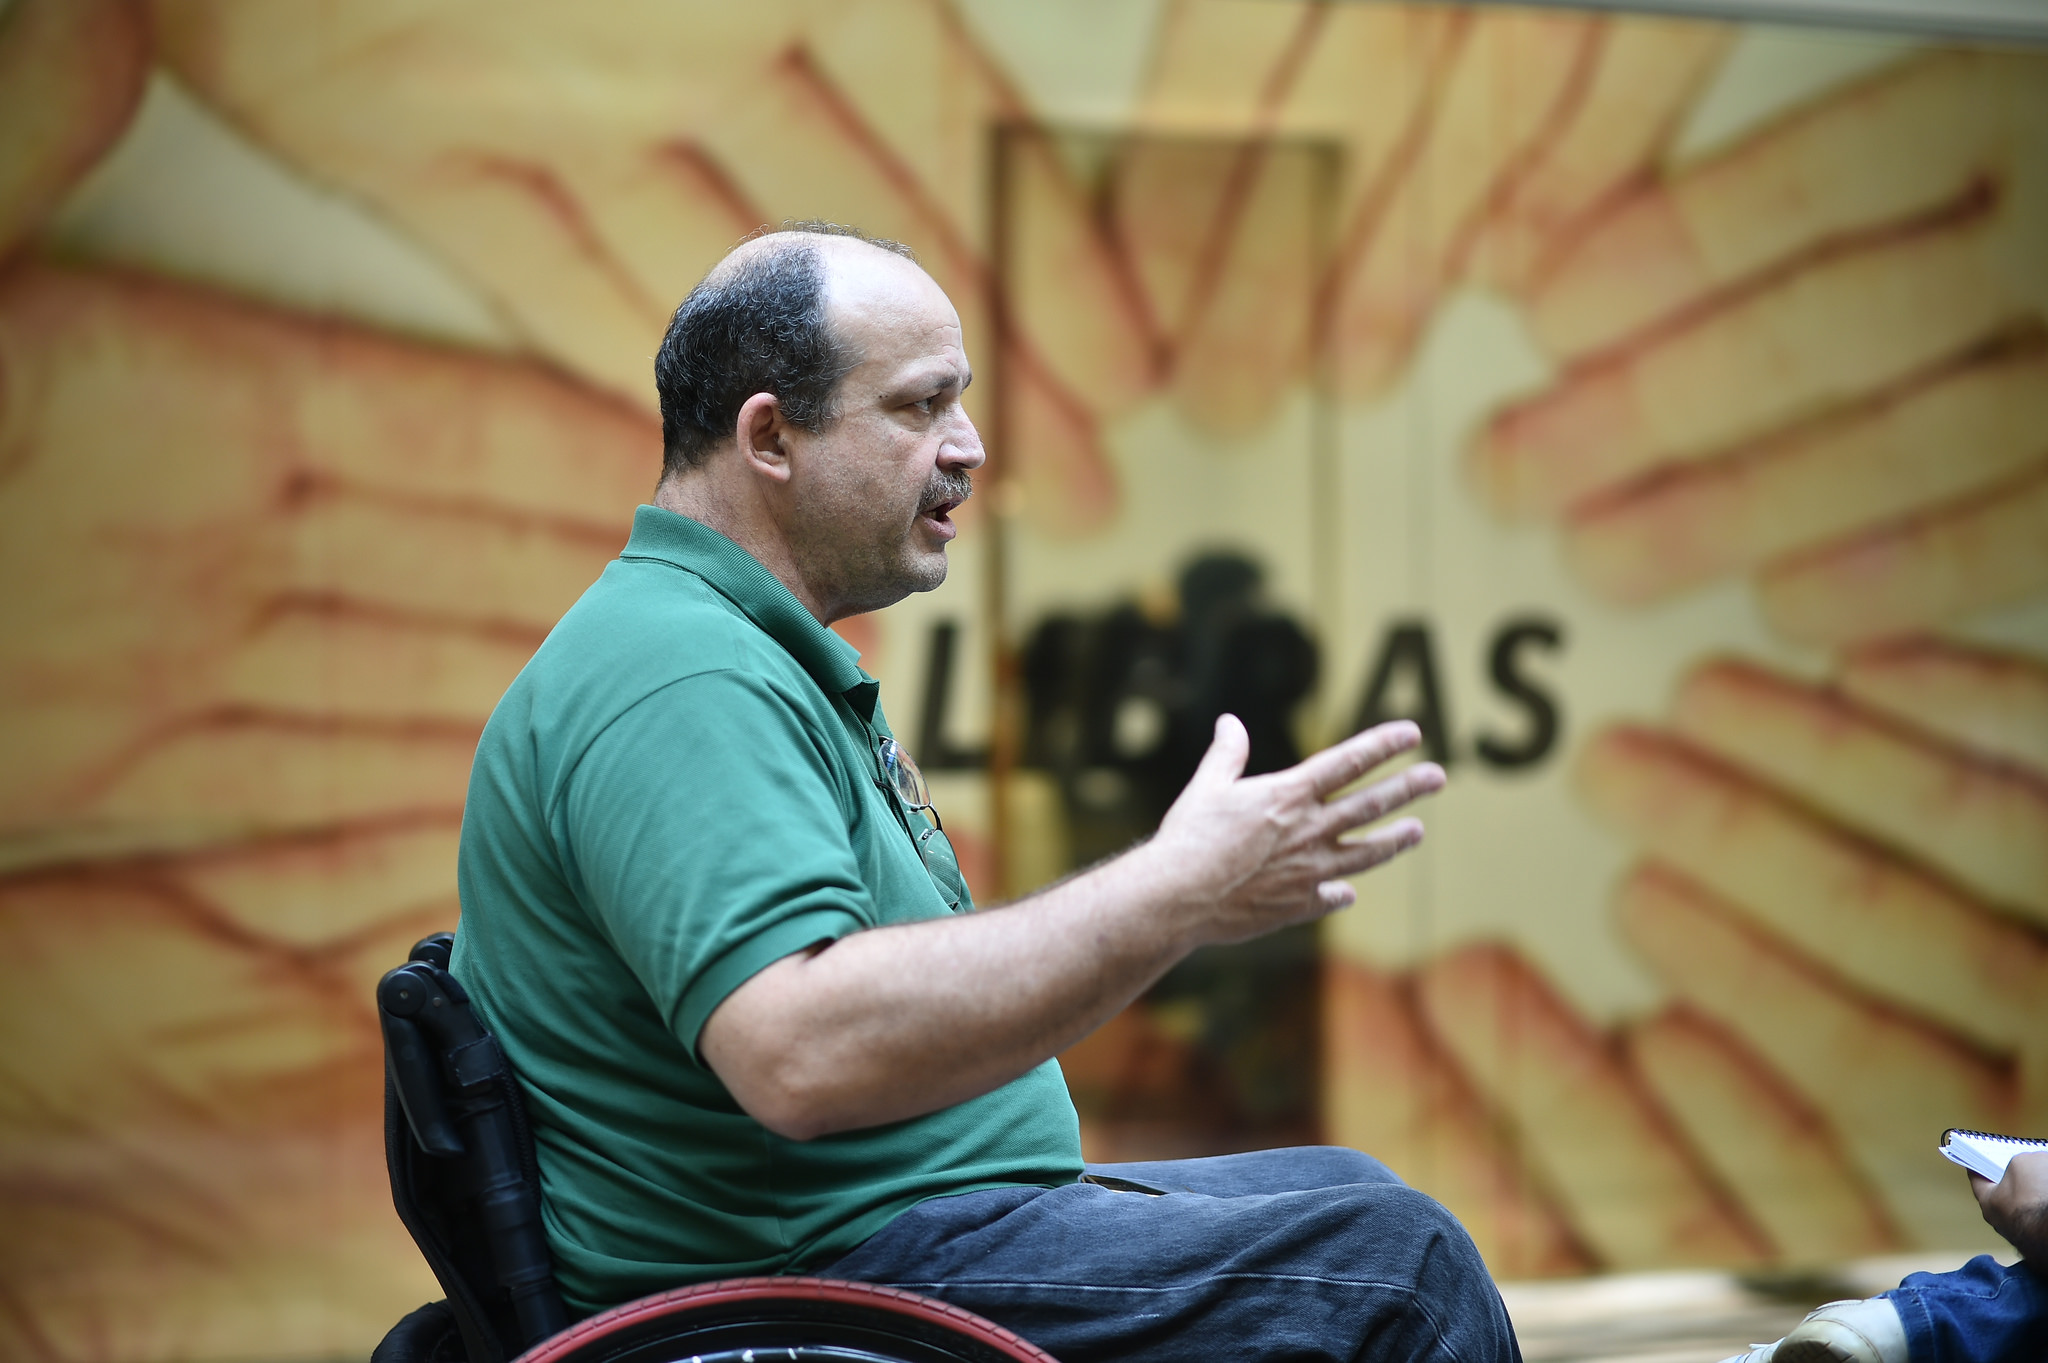 Homem sentado em cadeira de rodas. Ele usa uma camisa polo verde e gesticula enquanto fala. Ao fundo da imagem, em desfoque, há um banner com a palavra Libras.